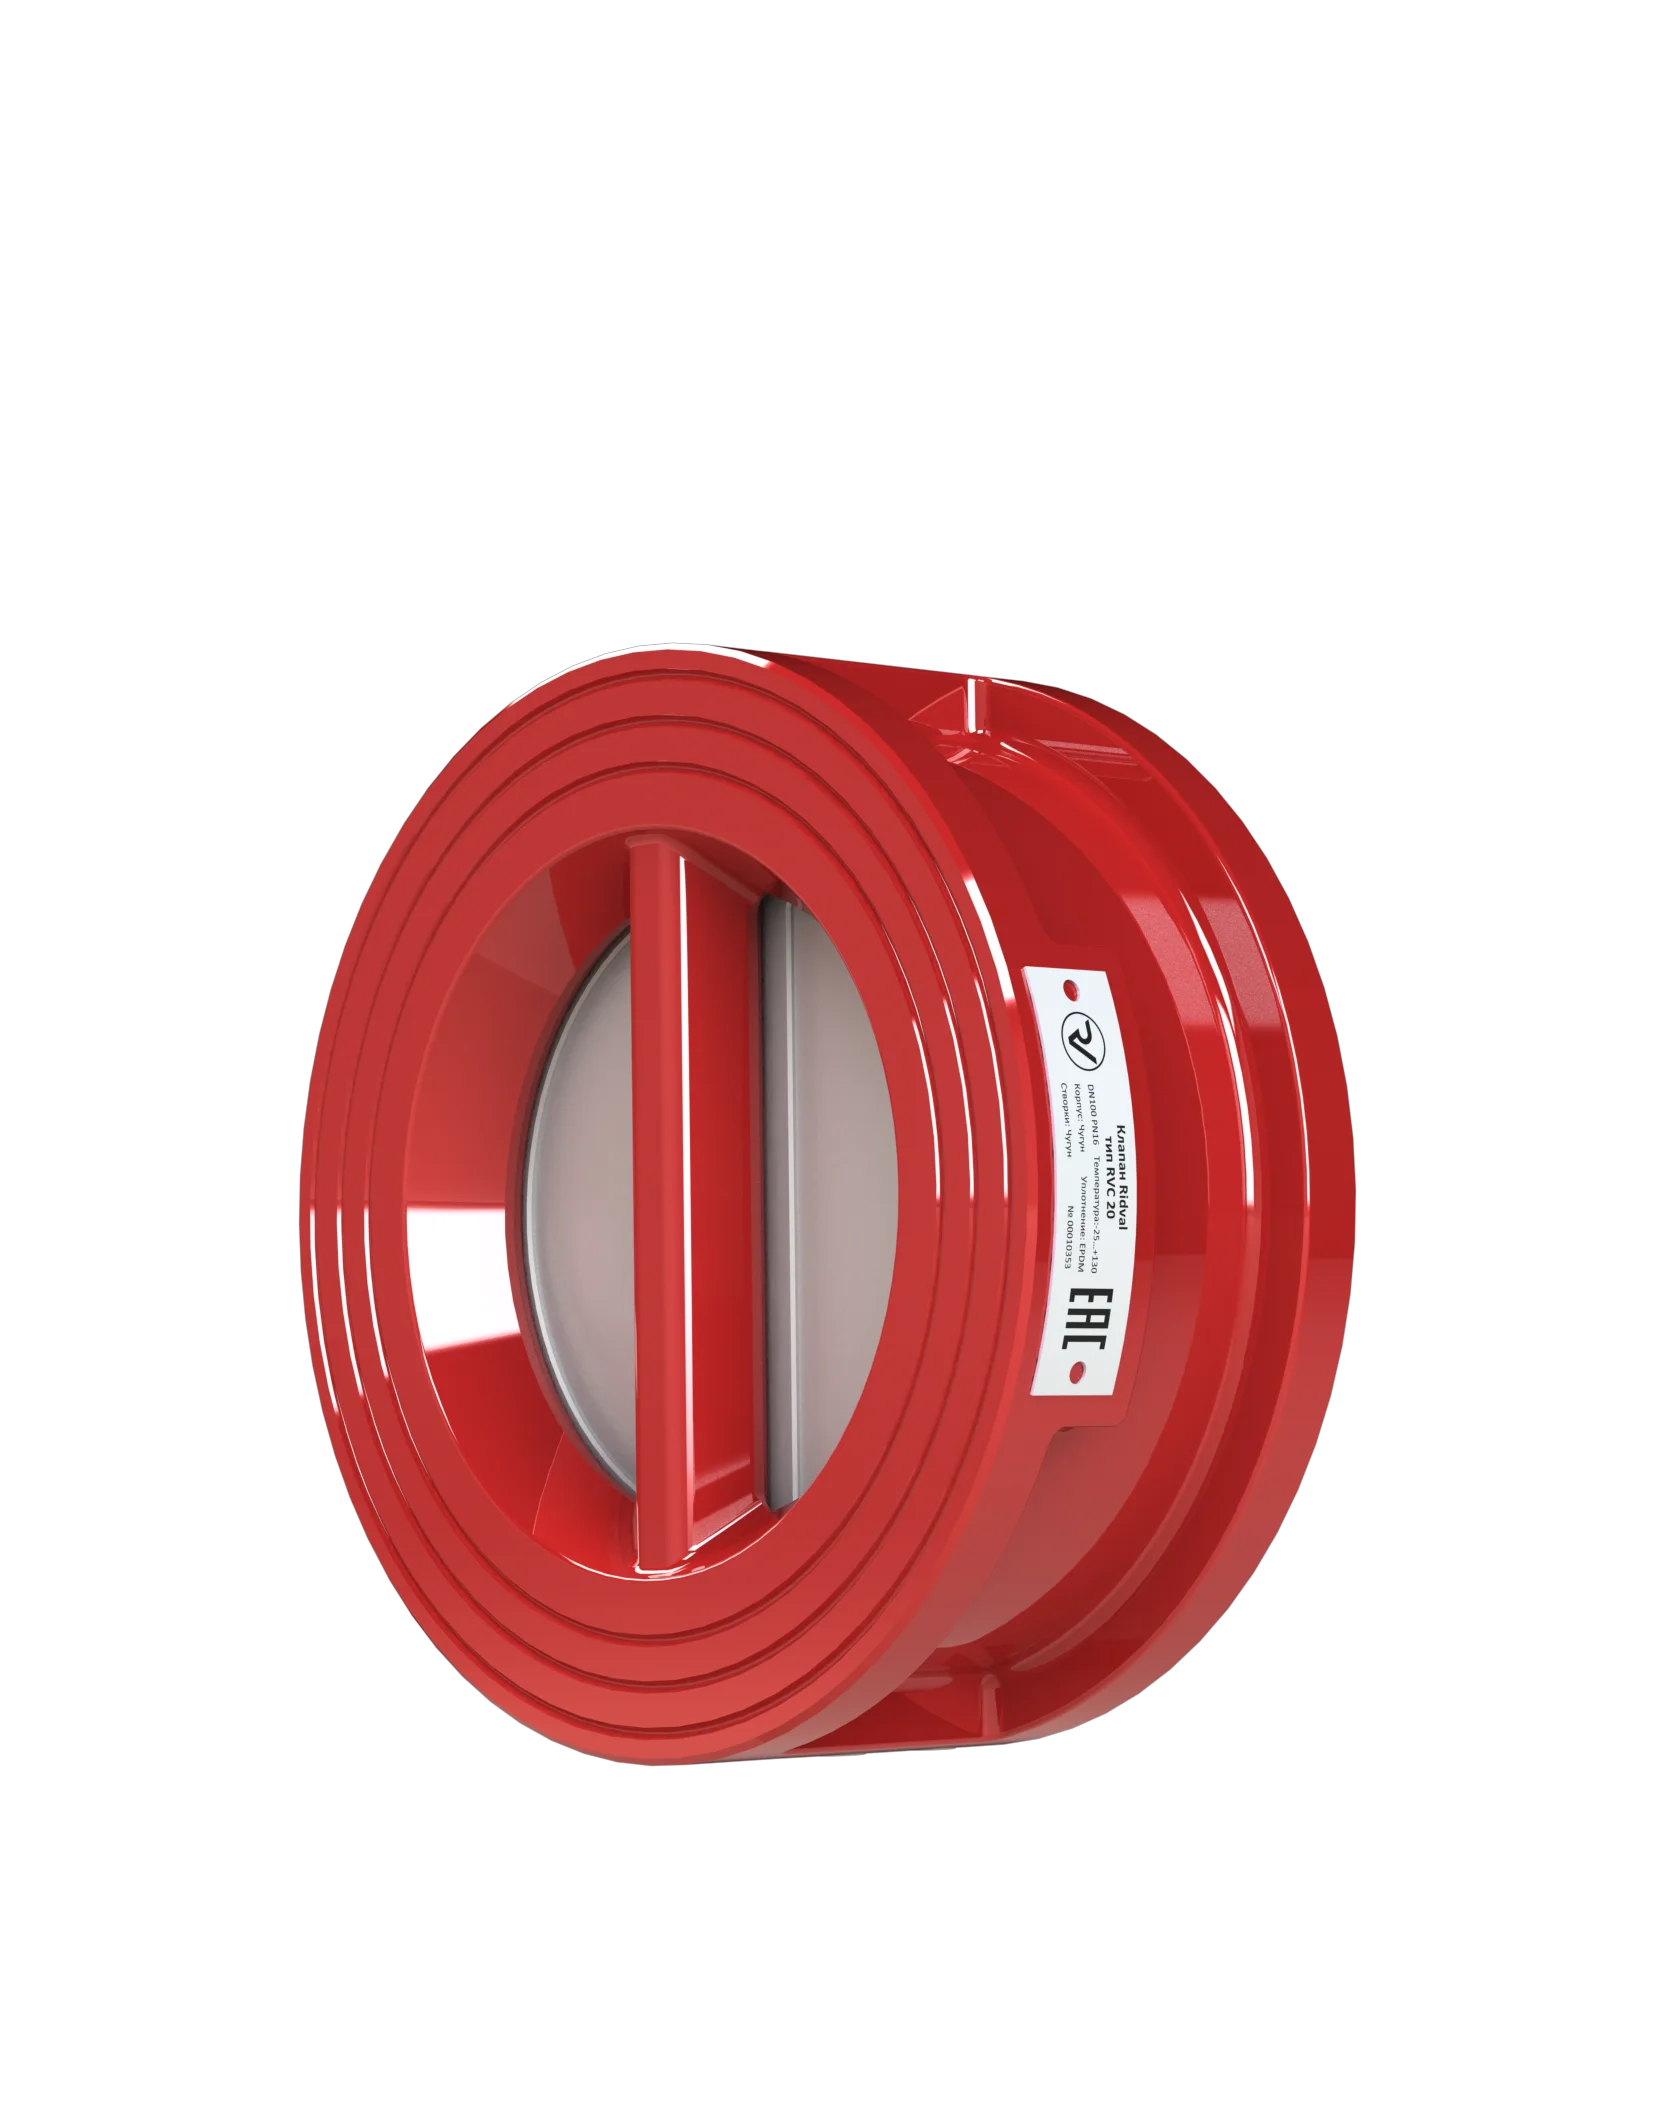 Клапан Ridval тип RVC 20 DN100 PN16, красный